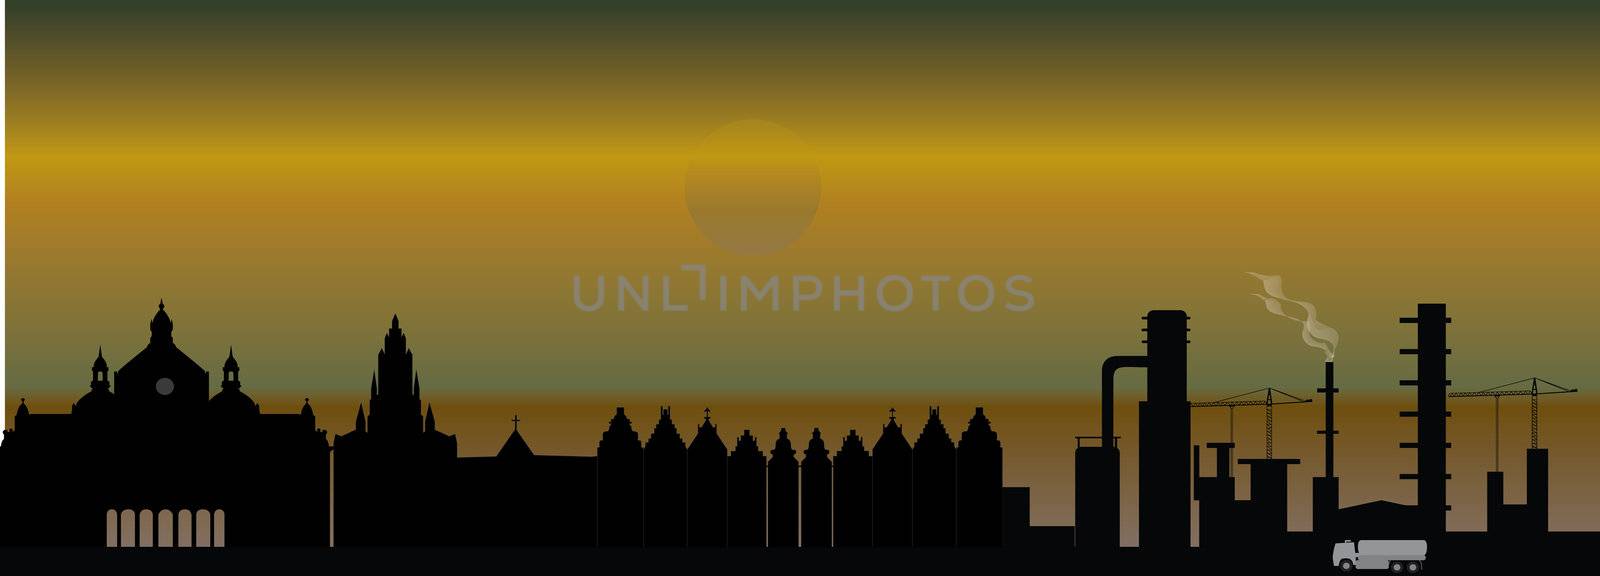 antwerp skyline by compuinfoto